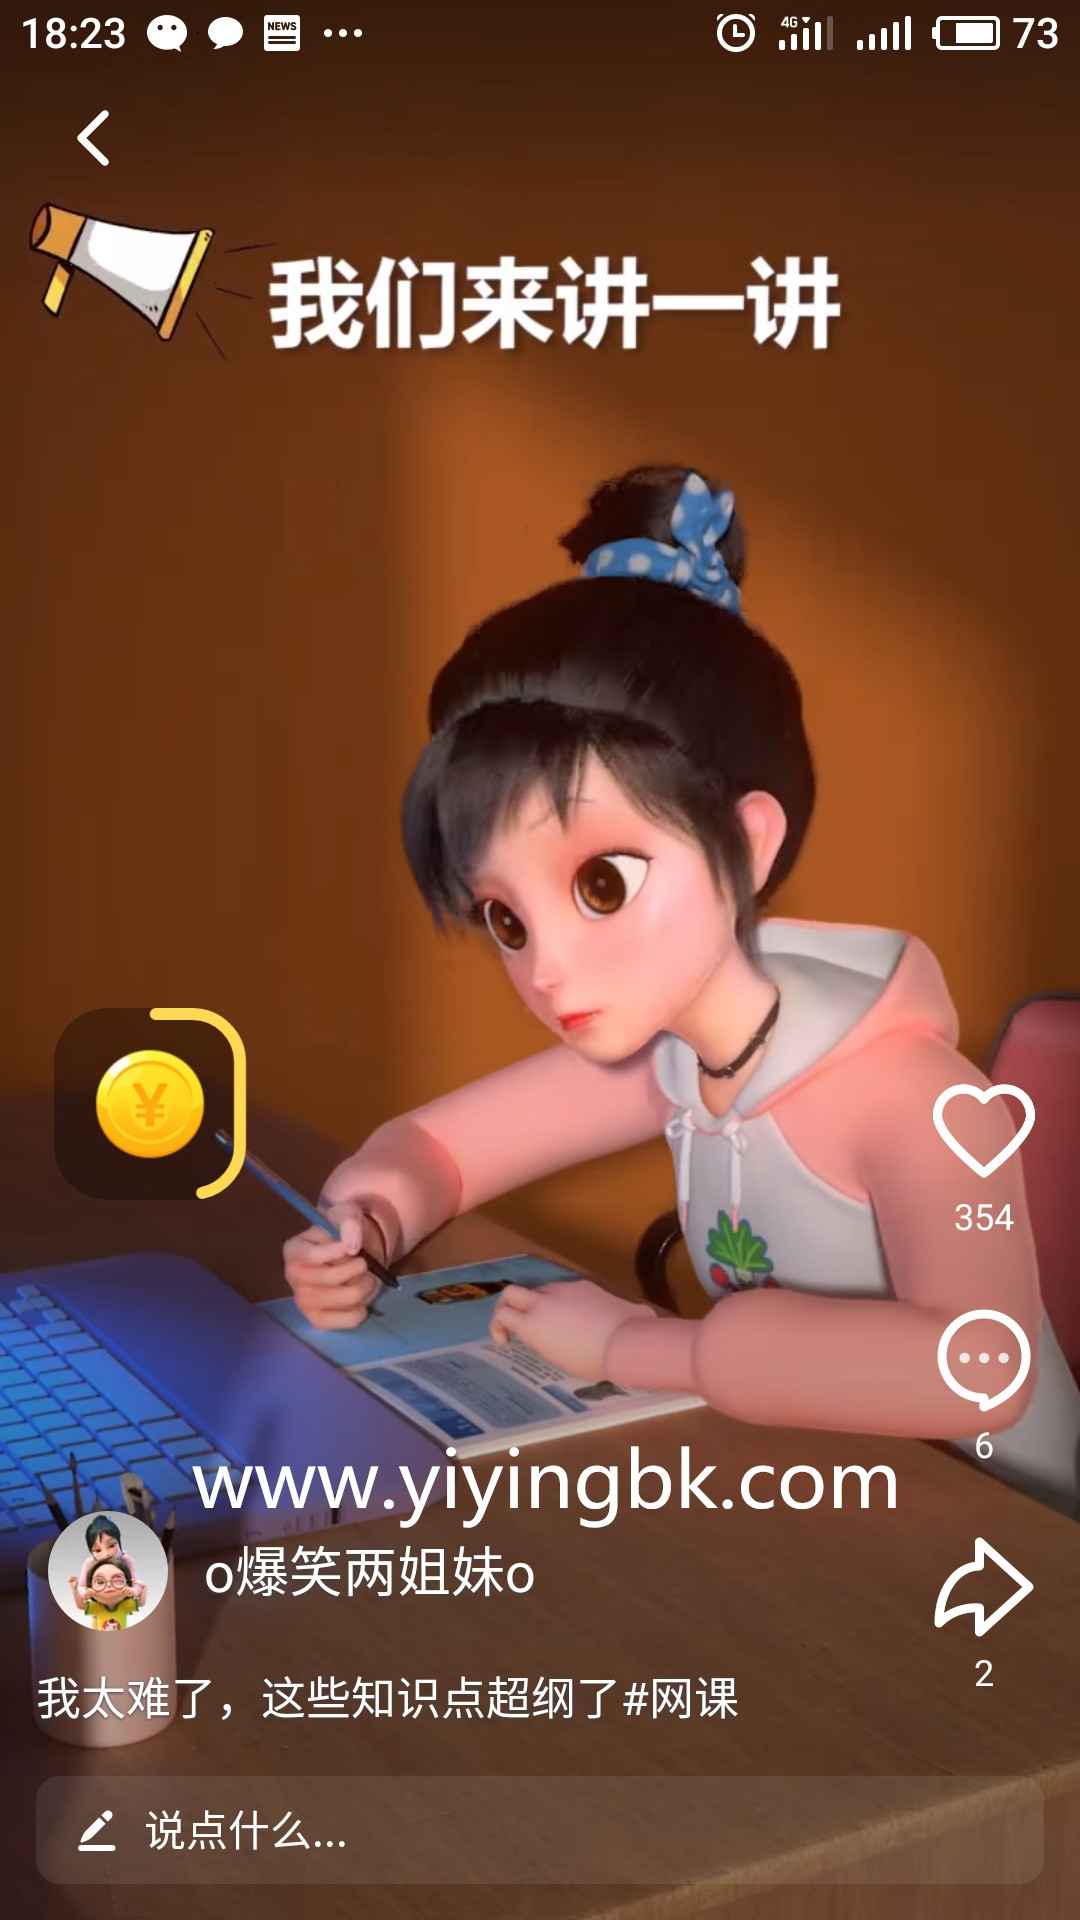 手机免费看视频，领红包赚零花钱，微信和支付宝直接提现。www.yiyingbk.com